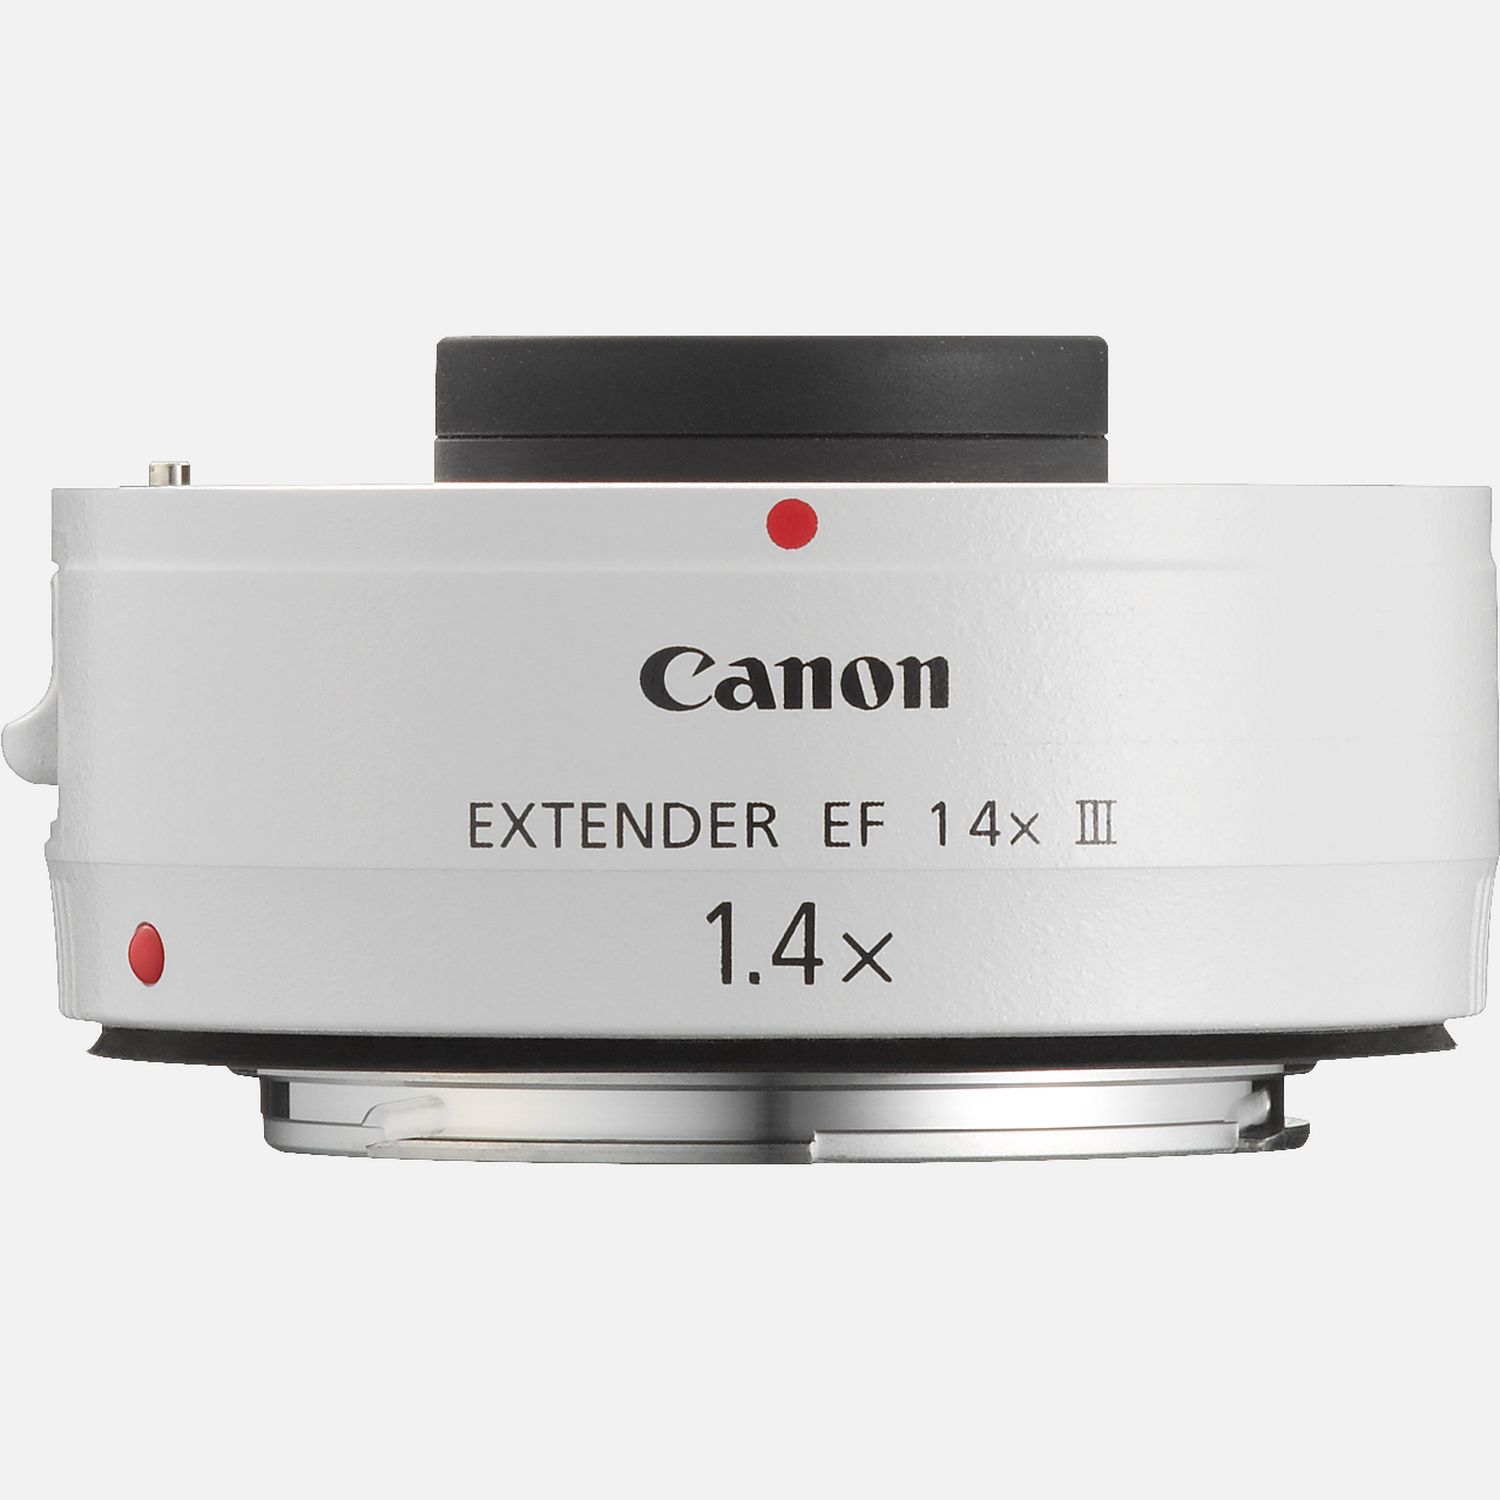 Canon EXTENDER EF 1.4x Ⅲ エクステンダー テレコン何卒宜しくお願い致します